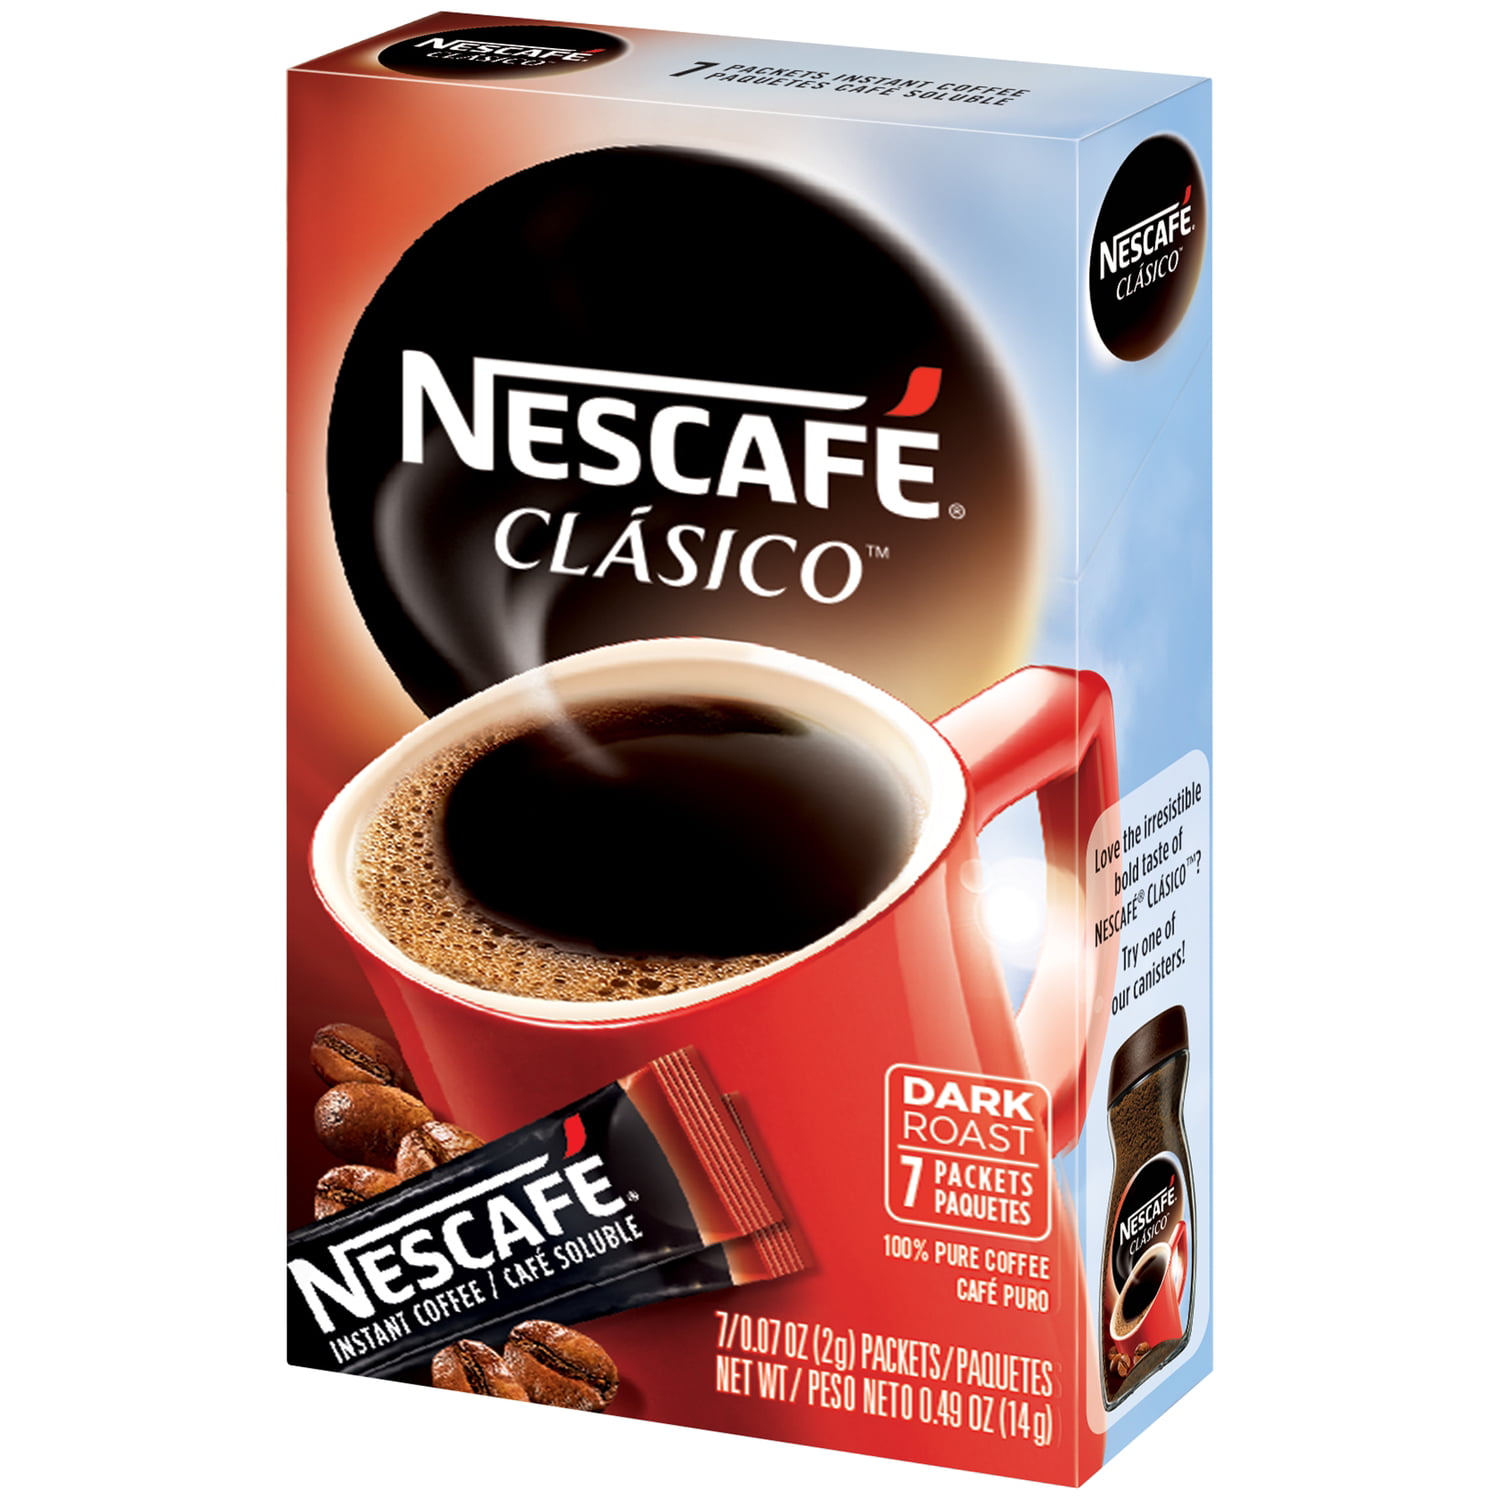 NESCAFE CLASICO Dark Roast Instant Coffee 7-0.07 oz. Box - Walmart.com